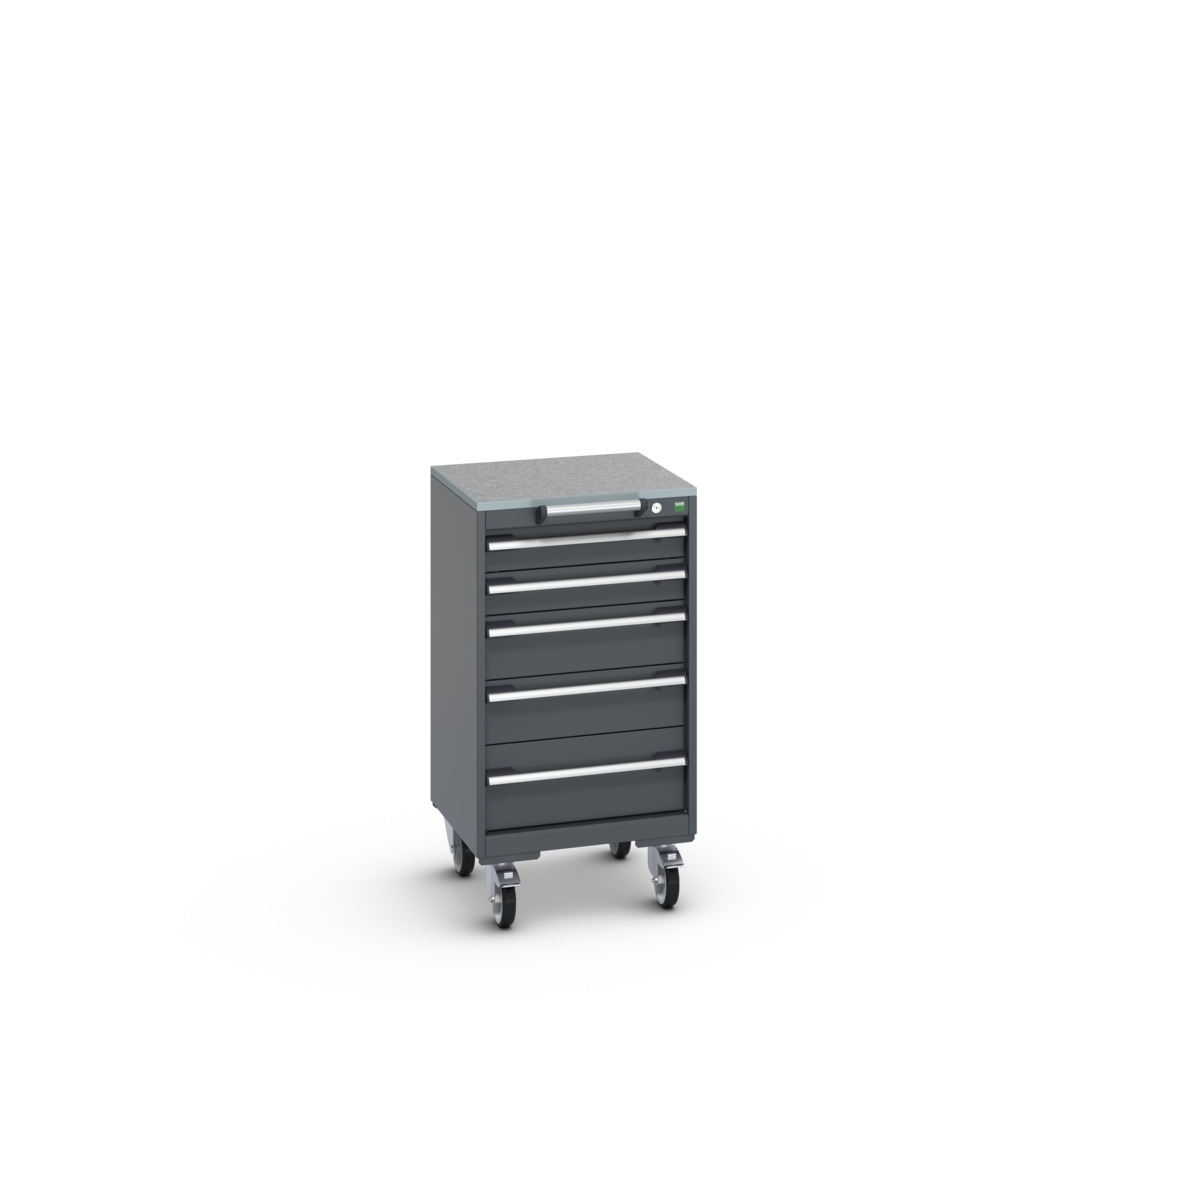 40402140.77V - cubio mobile cabinet